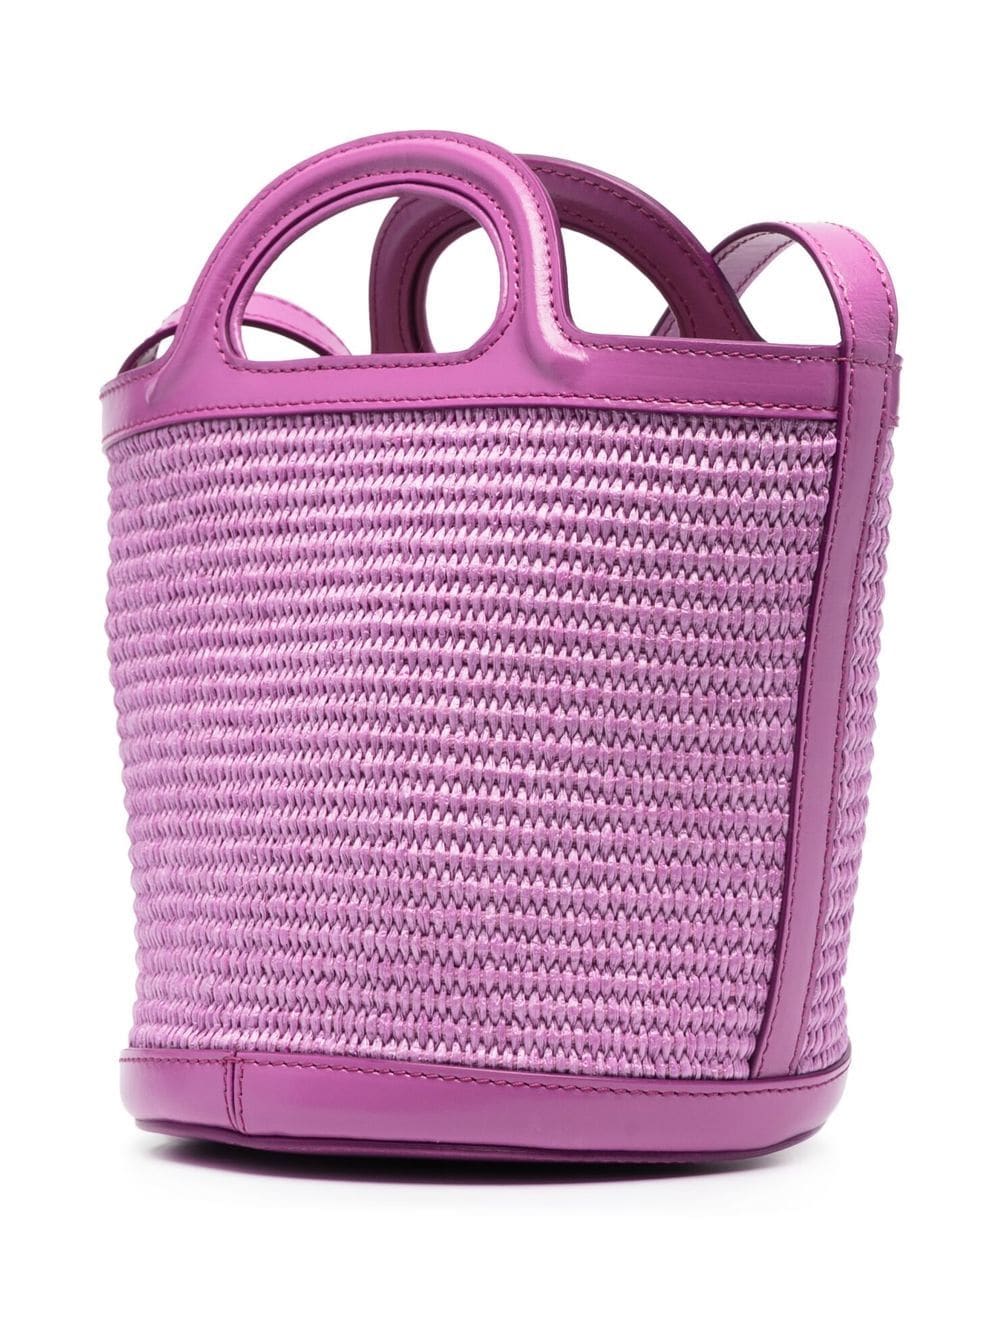 Lilac mini Secchiello bucket bag